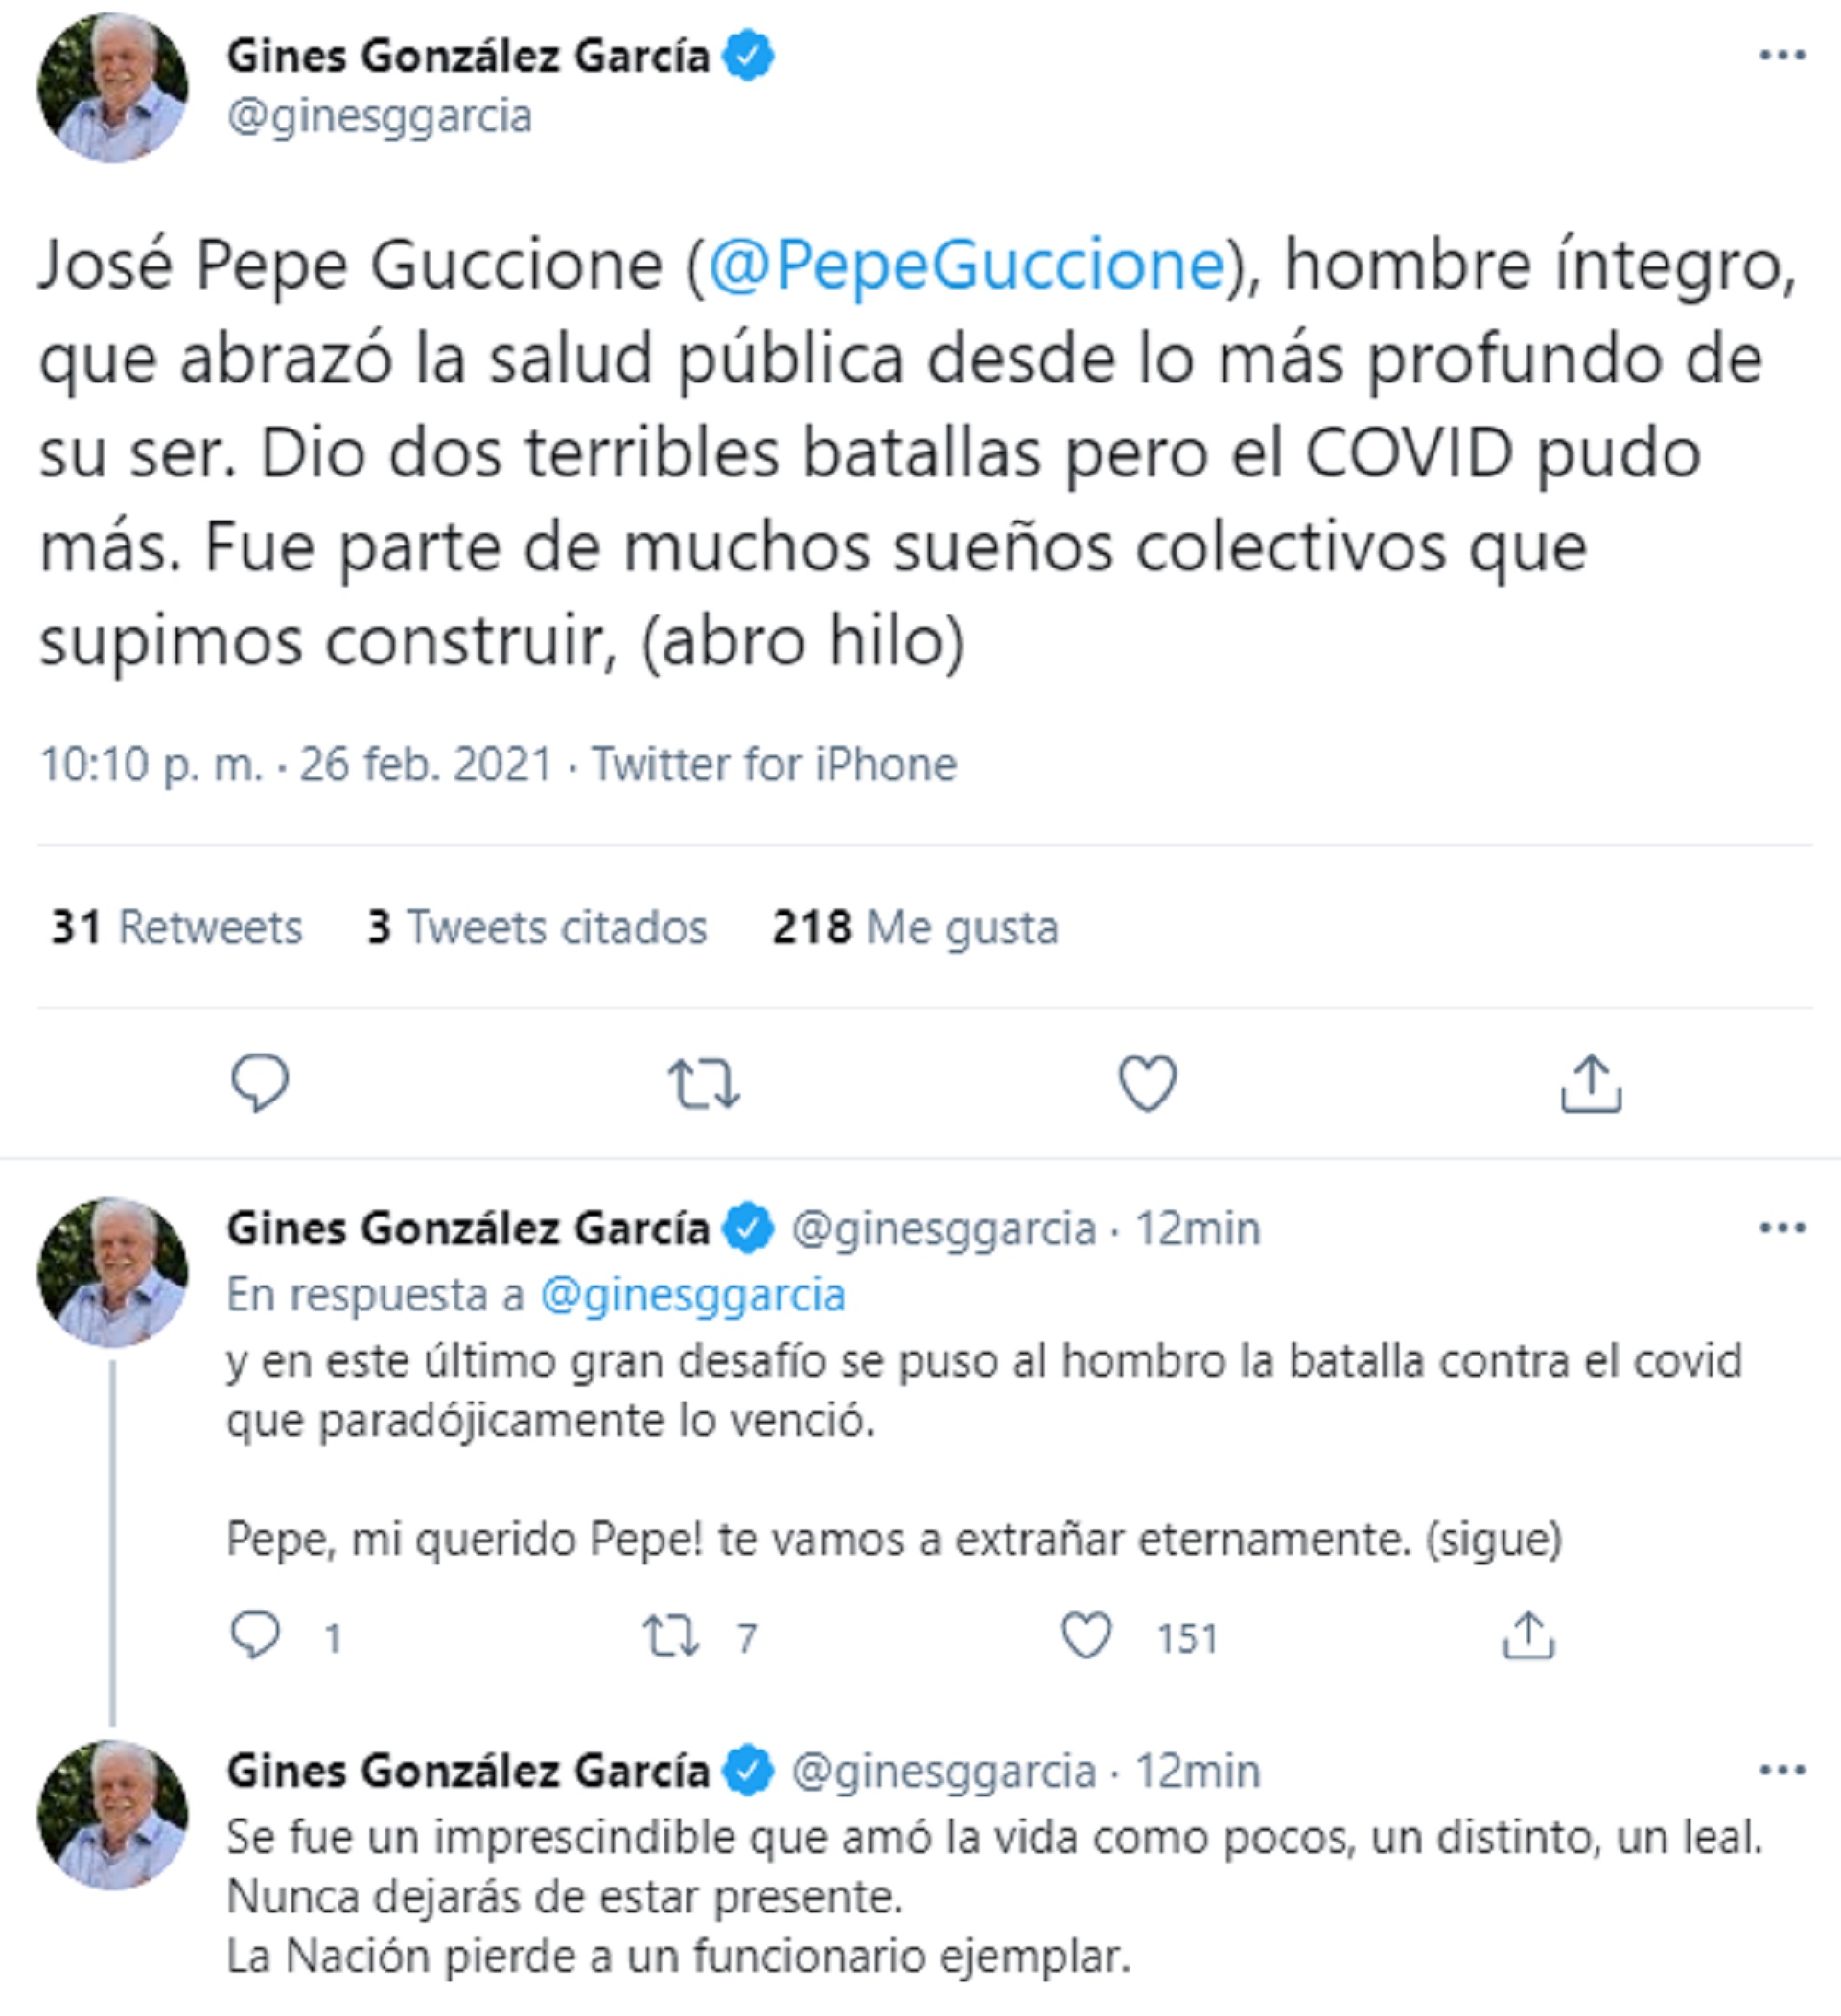 El sanitarista utilizó las redes sociales para despedir a José Pepe Guccione, ex ministro de Salud de la provincia de Misiones, quien falleció a causa del coronavirus